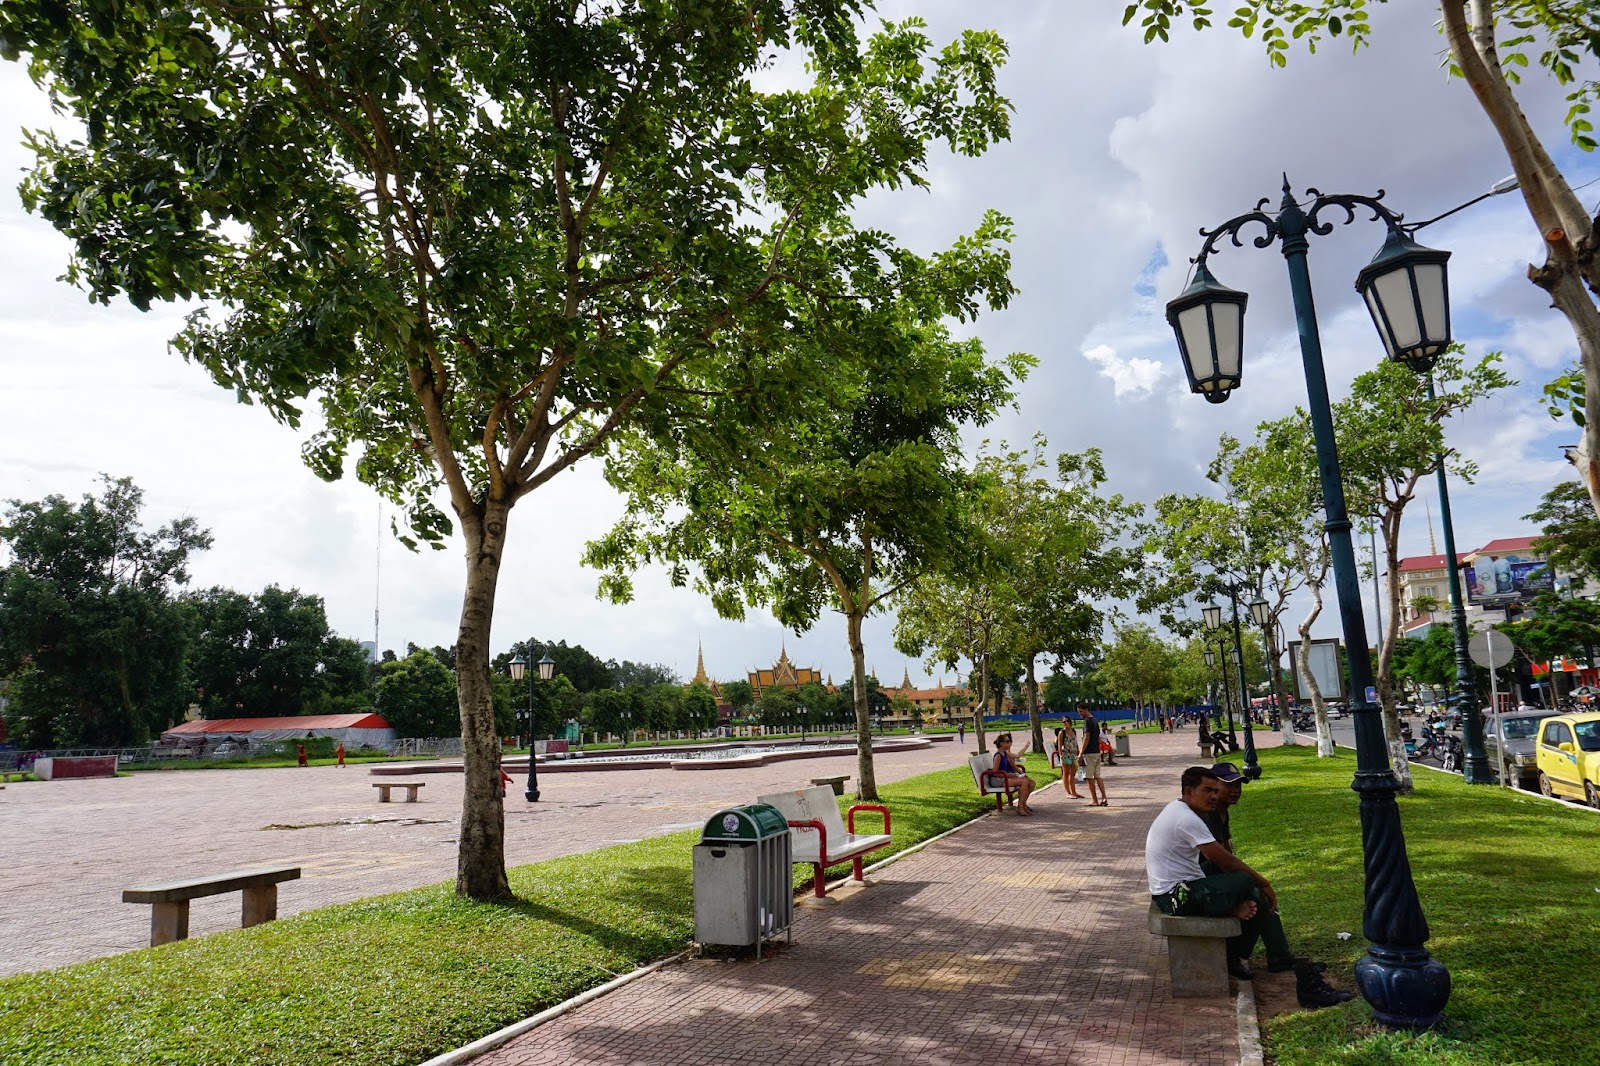 Taking an afternoon stroll around Wat Botum park